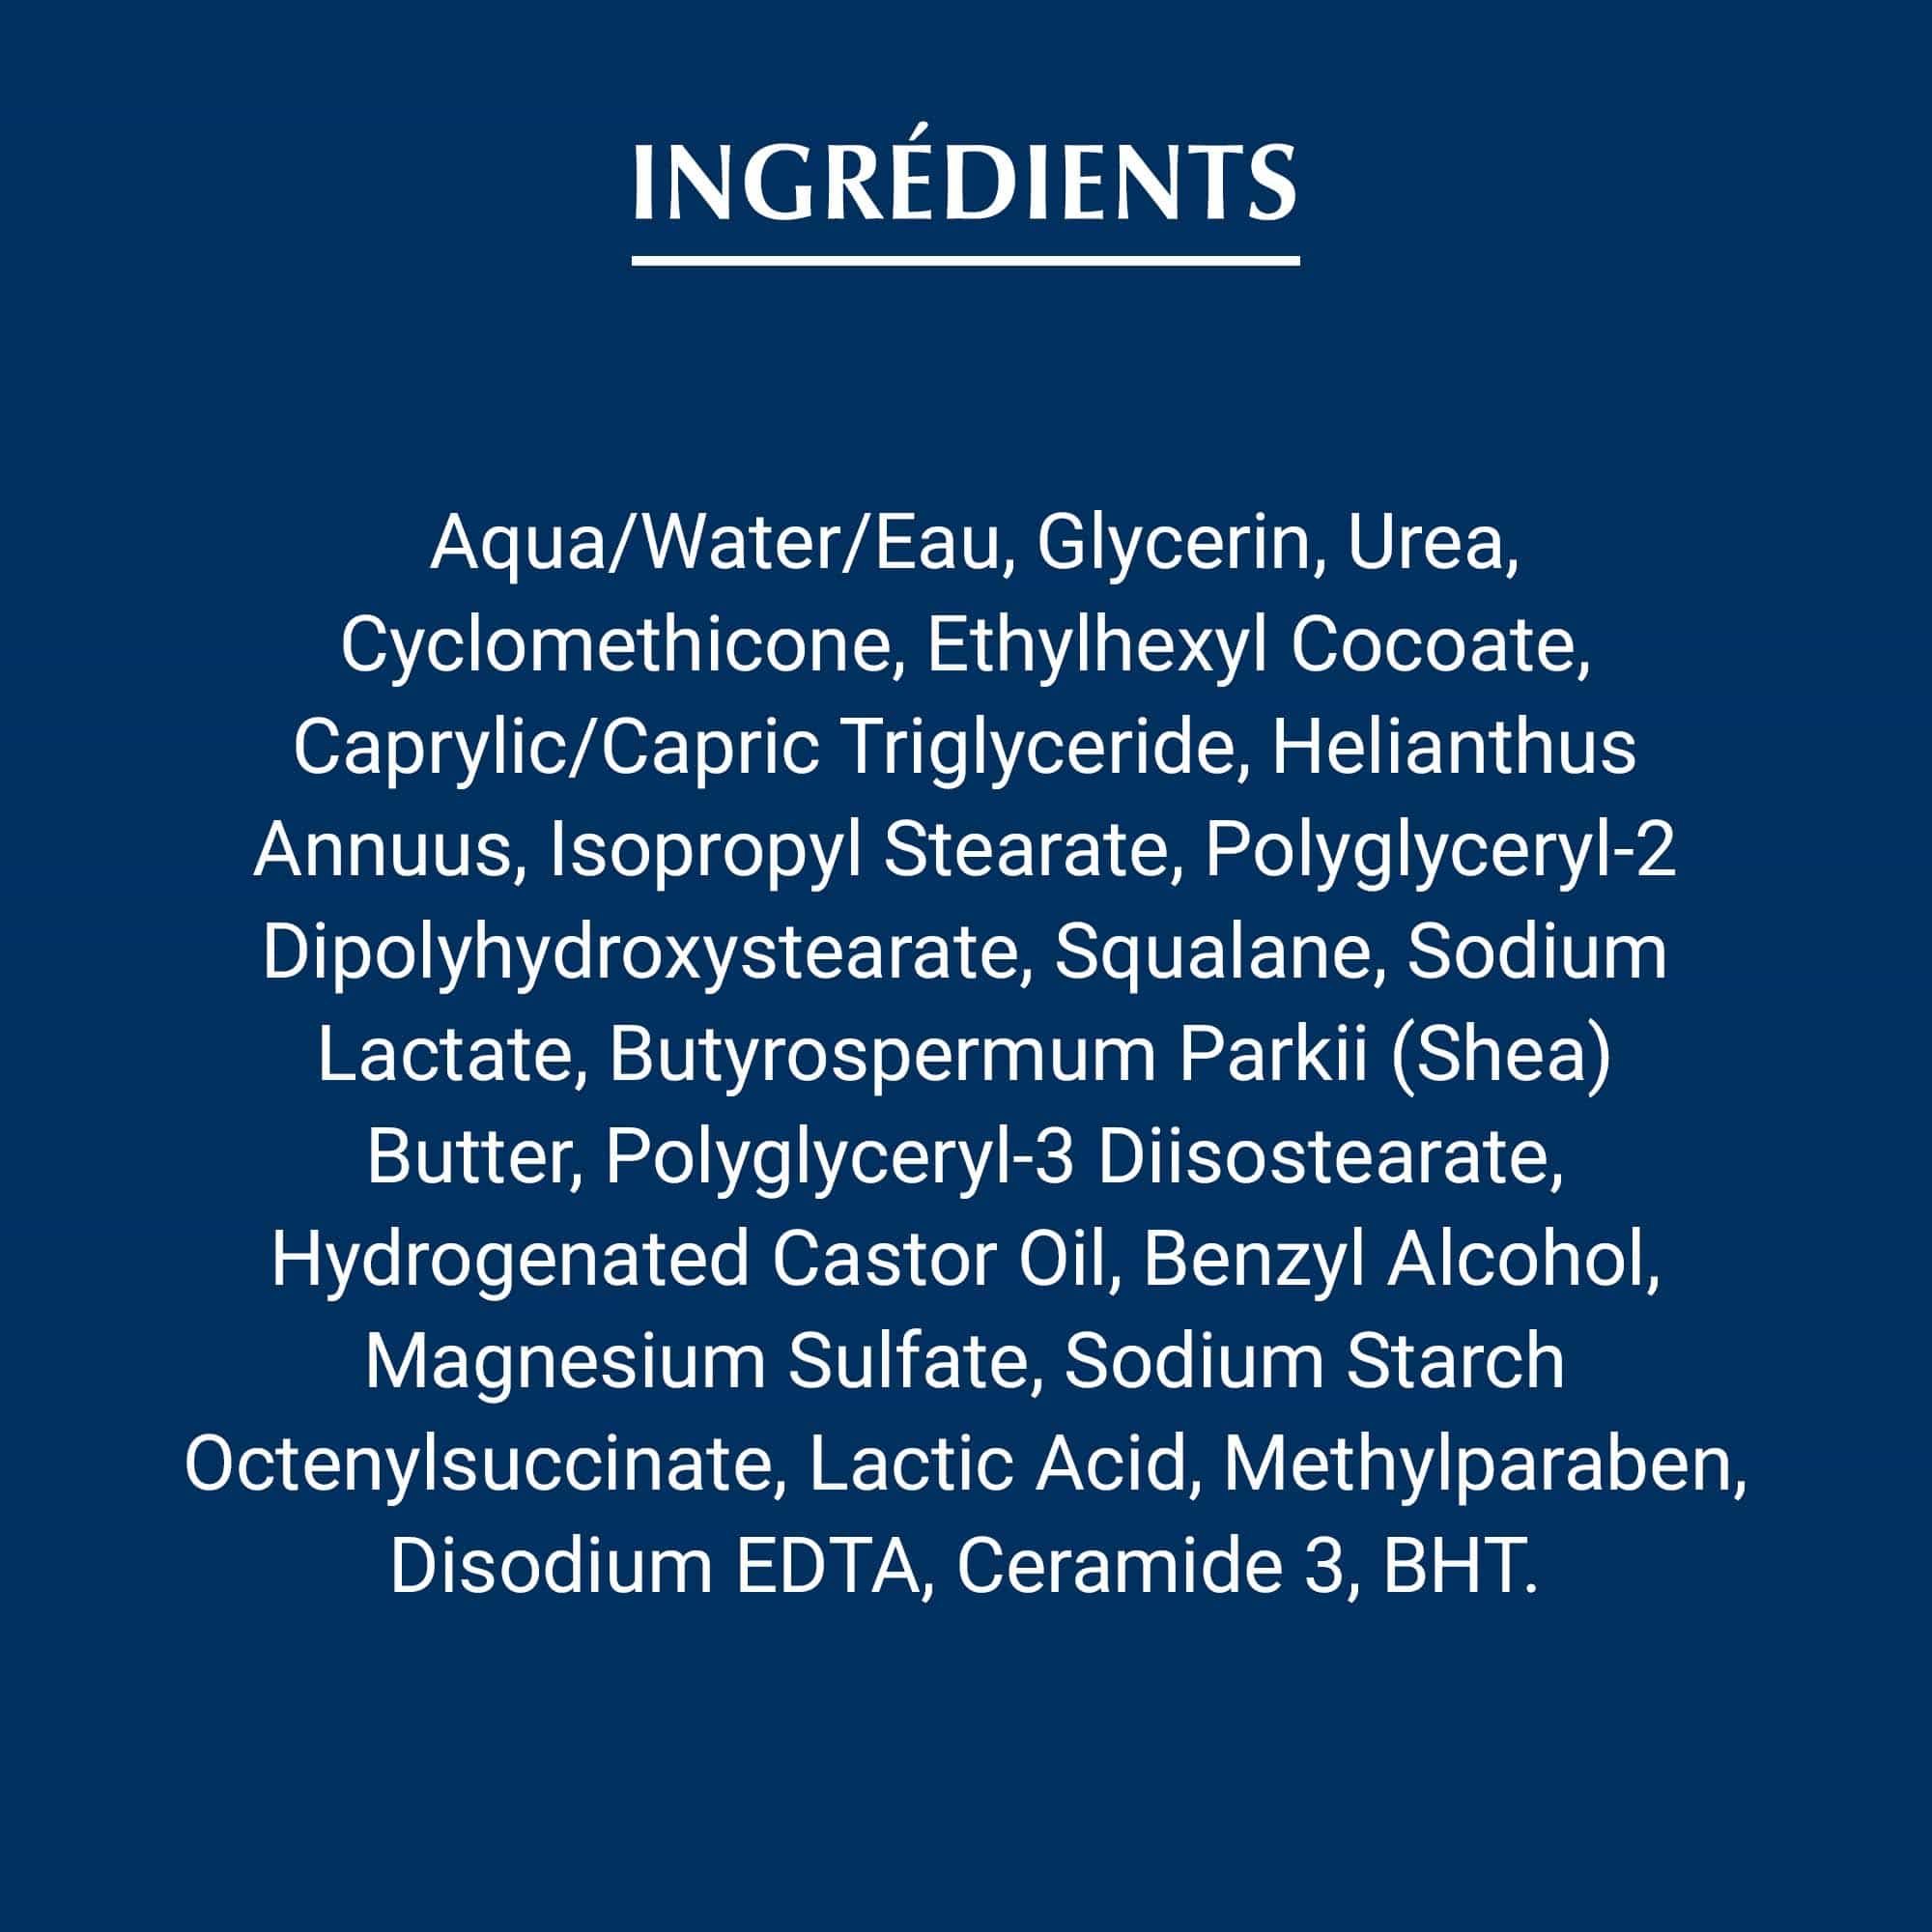 Liste des ingrédients composant la Crème régénératrice pour le visage Urea Repair Eucerin soins de nuit, en lettrage blanc sur fond bleu foncé.